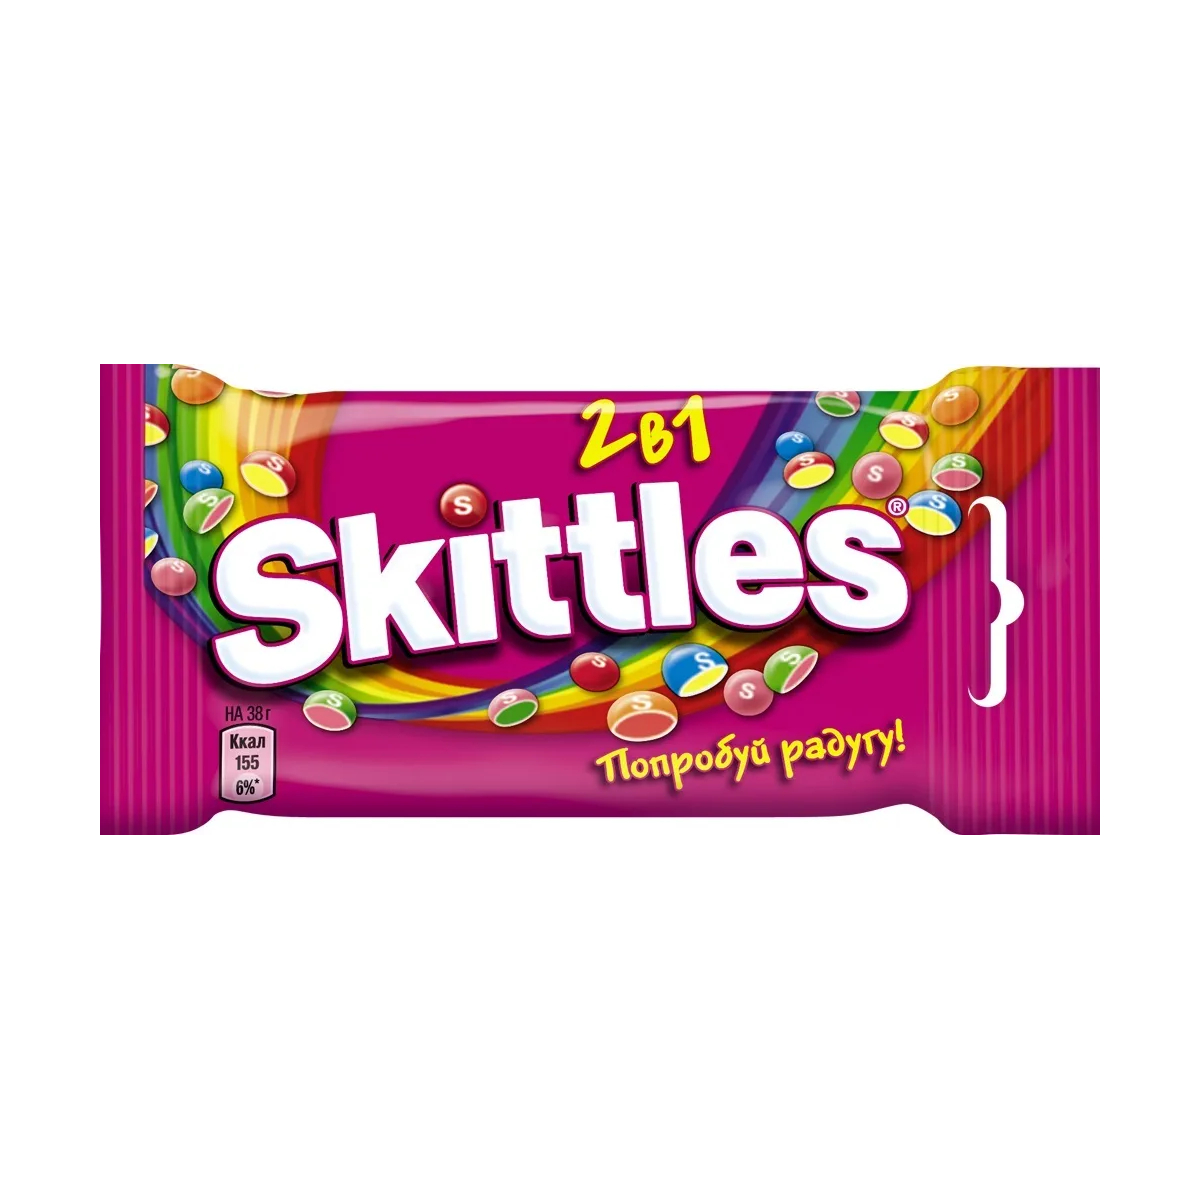 Драже Skittles 2в1, в разноцветной глазури, 38 г драже skittles кисломикс в разноцветной глазури 38 г